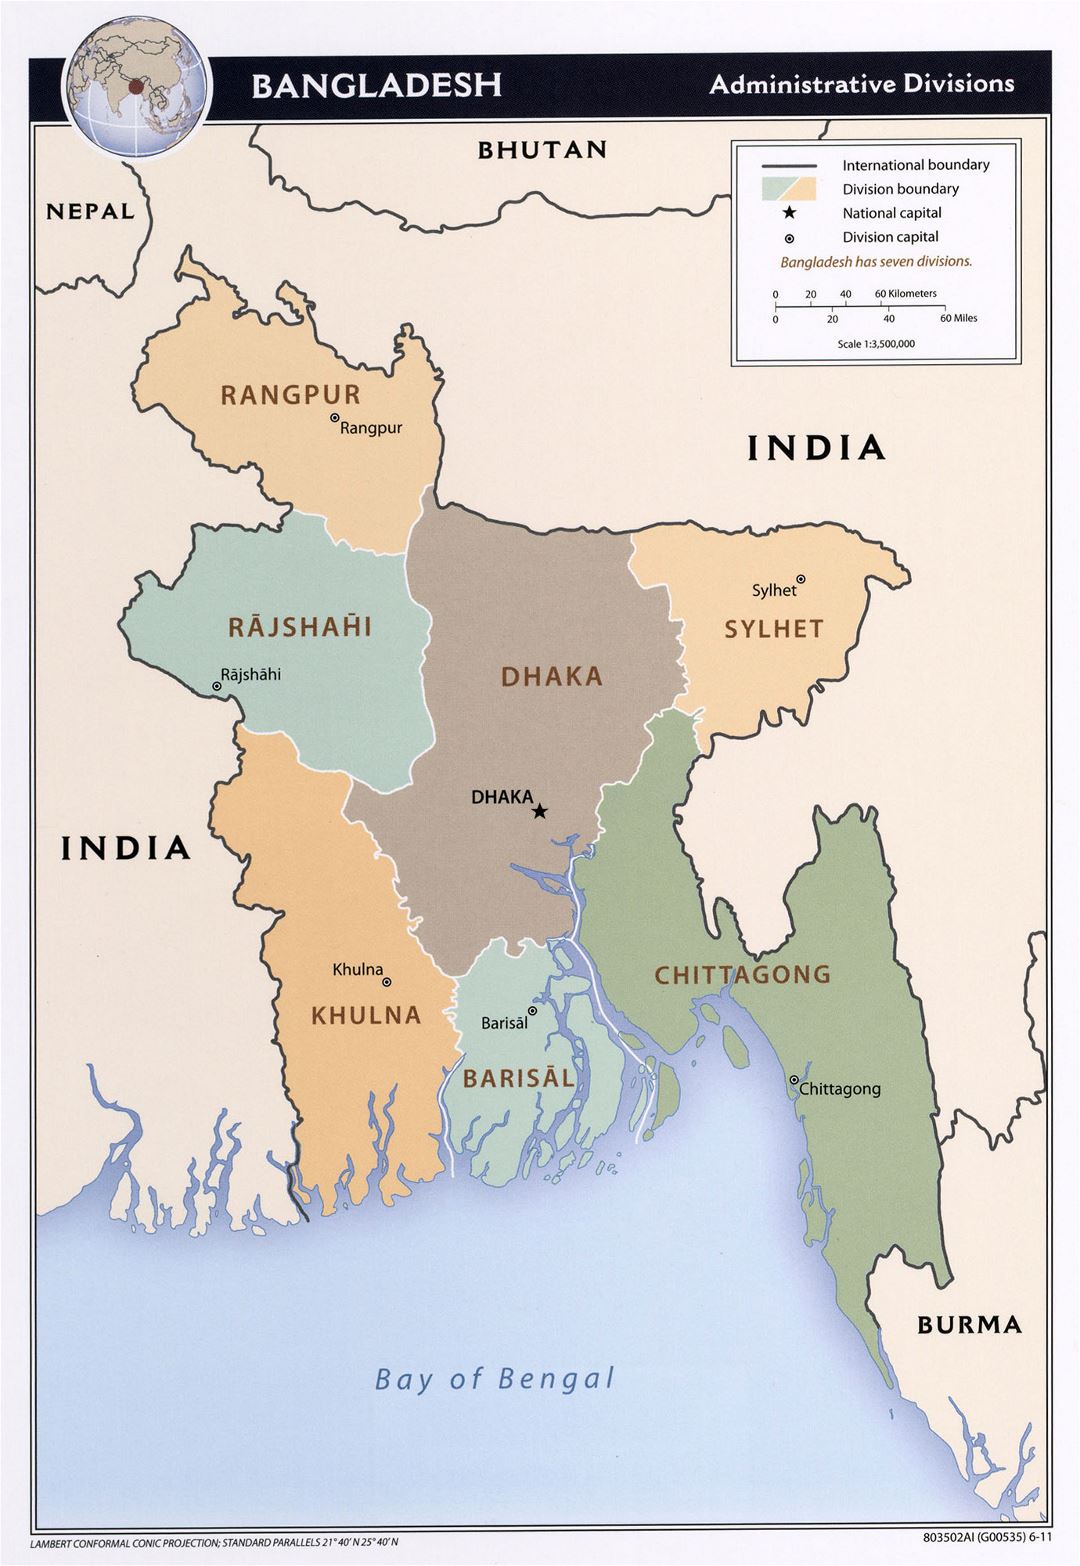 Grande detallado mapa de administrativas divisiones de Bangladesh - 2011